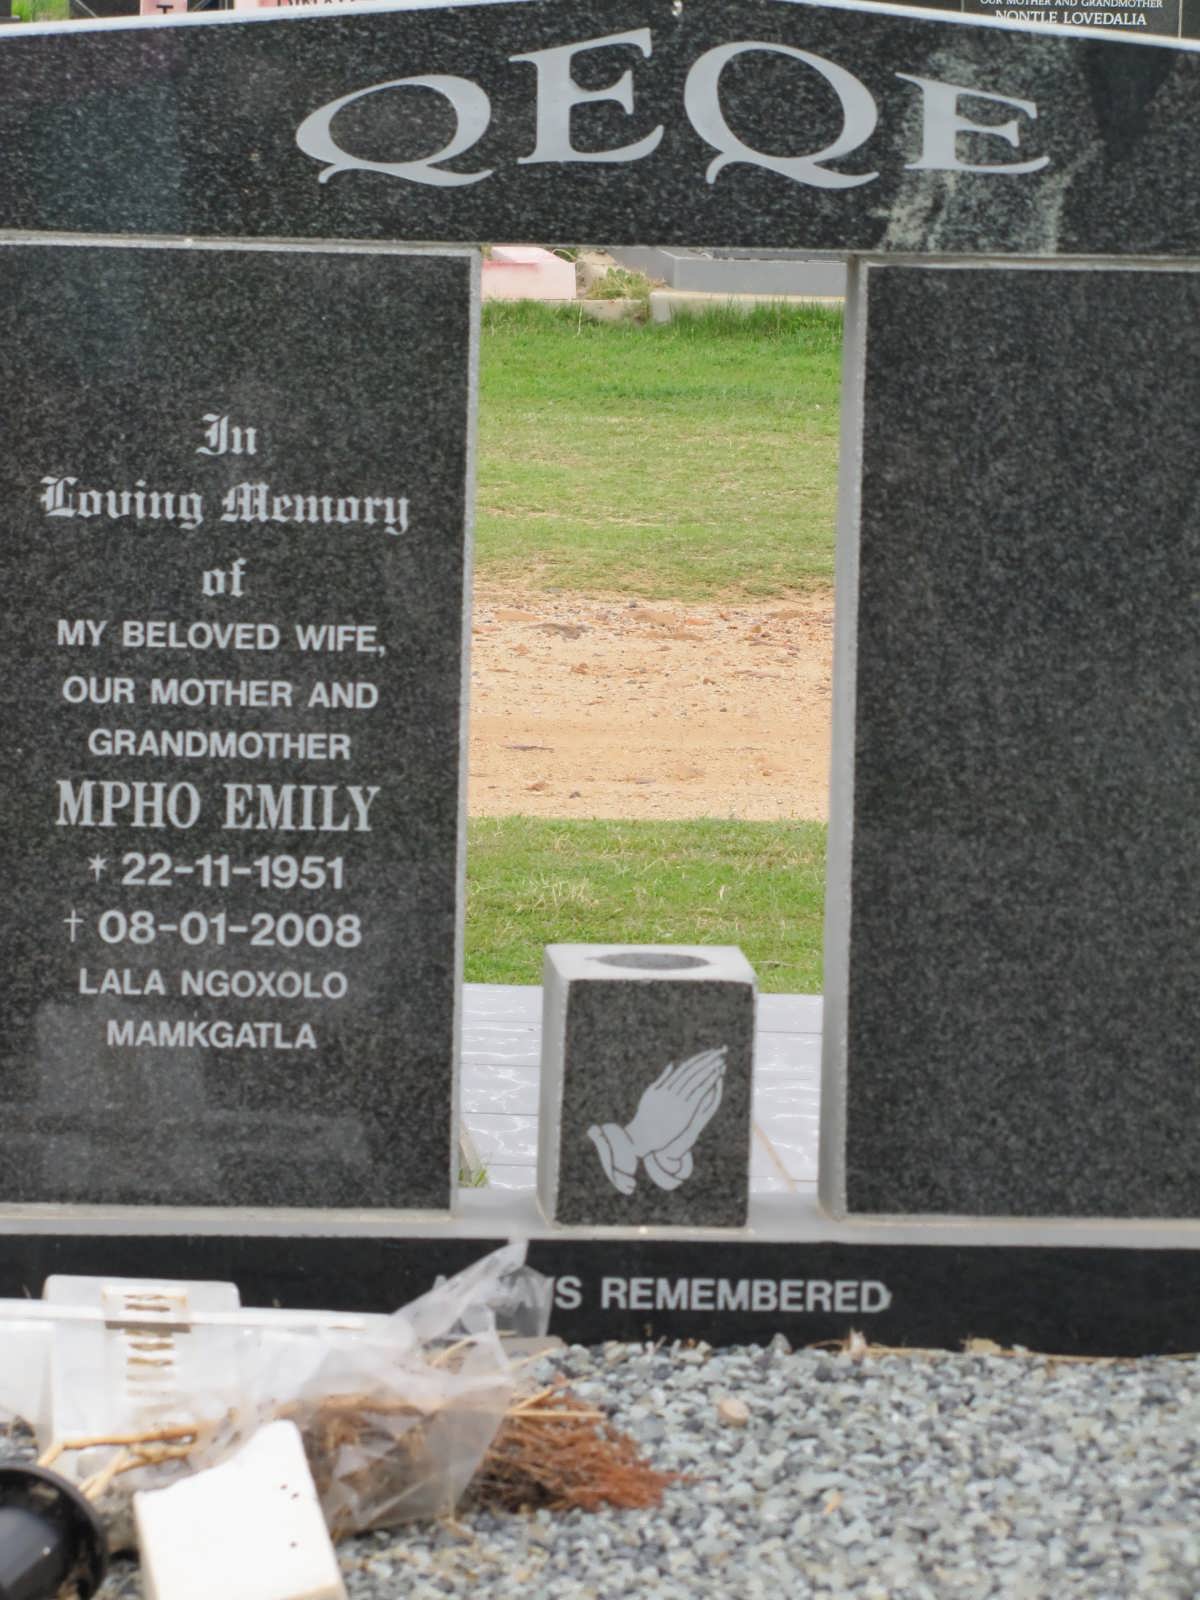 QEQE Mpho Emily 1951-2008